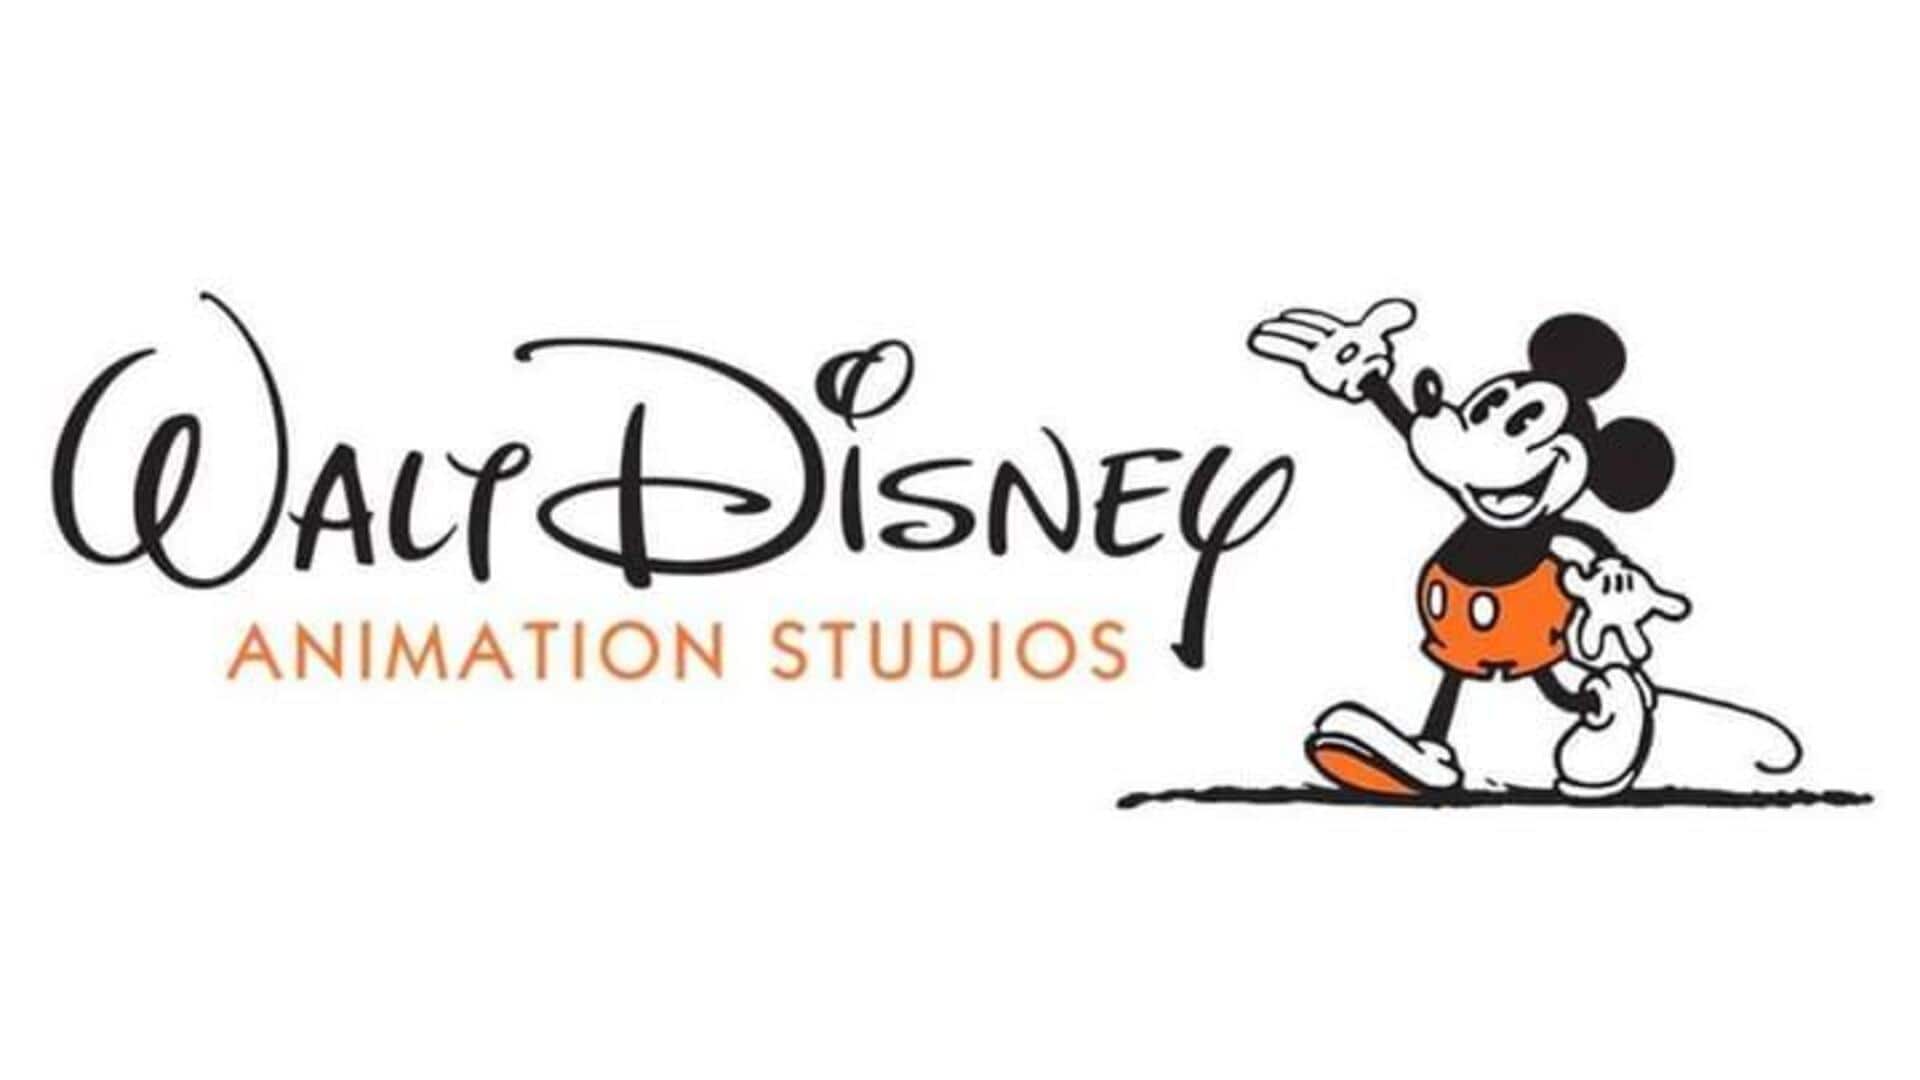 93% Staf Disney Animation Studios Memilih Mendukung Serikat Pekerja